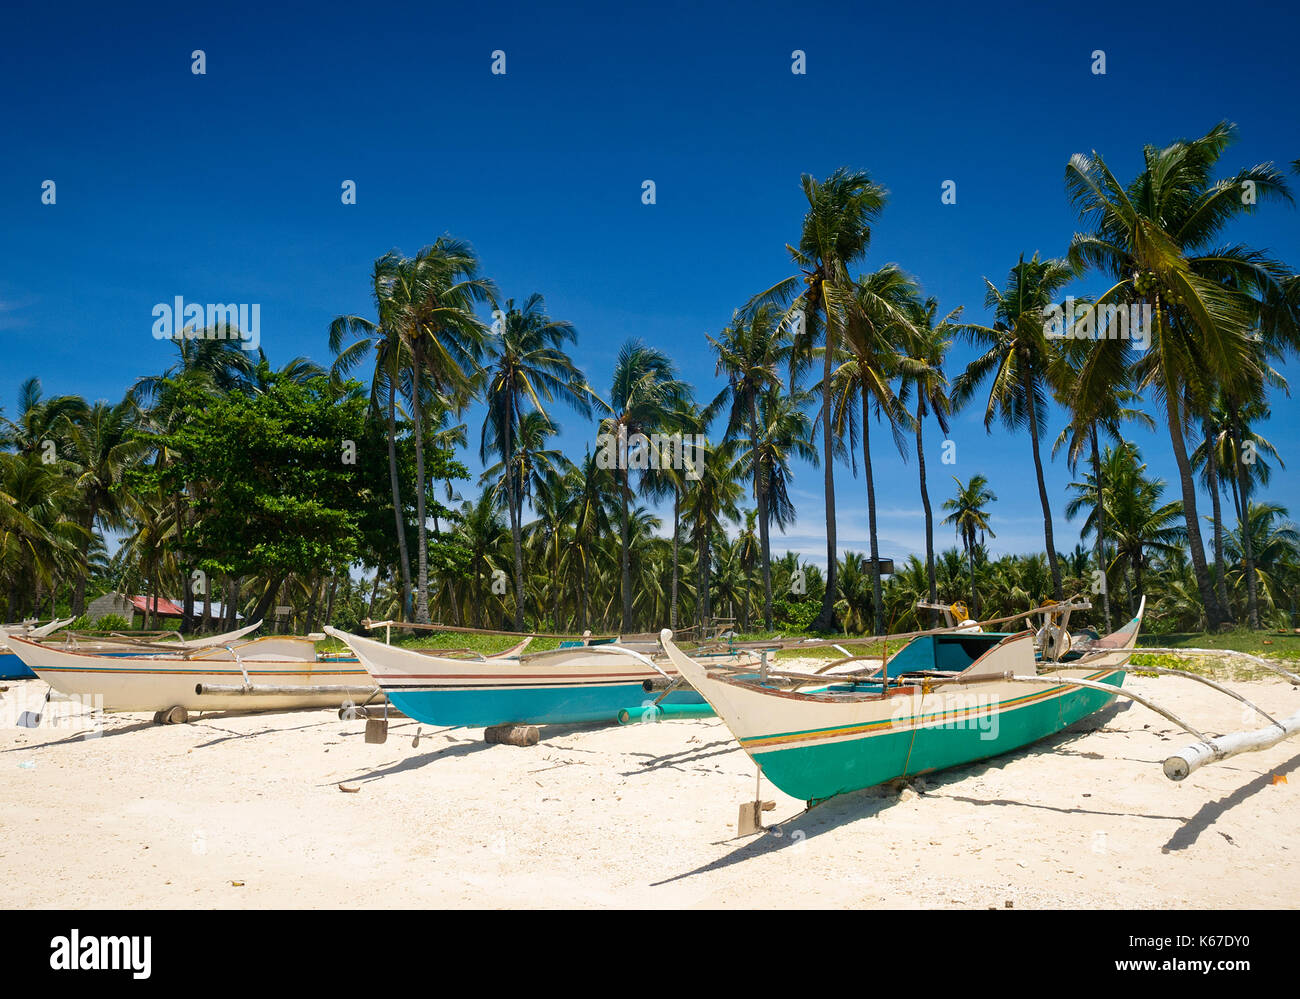 Bateaux de pêche sur la plage, Guimbatayan, île de Cebu, Philippines Banque D'Images